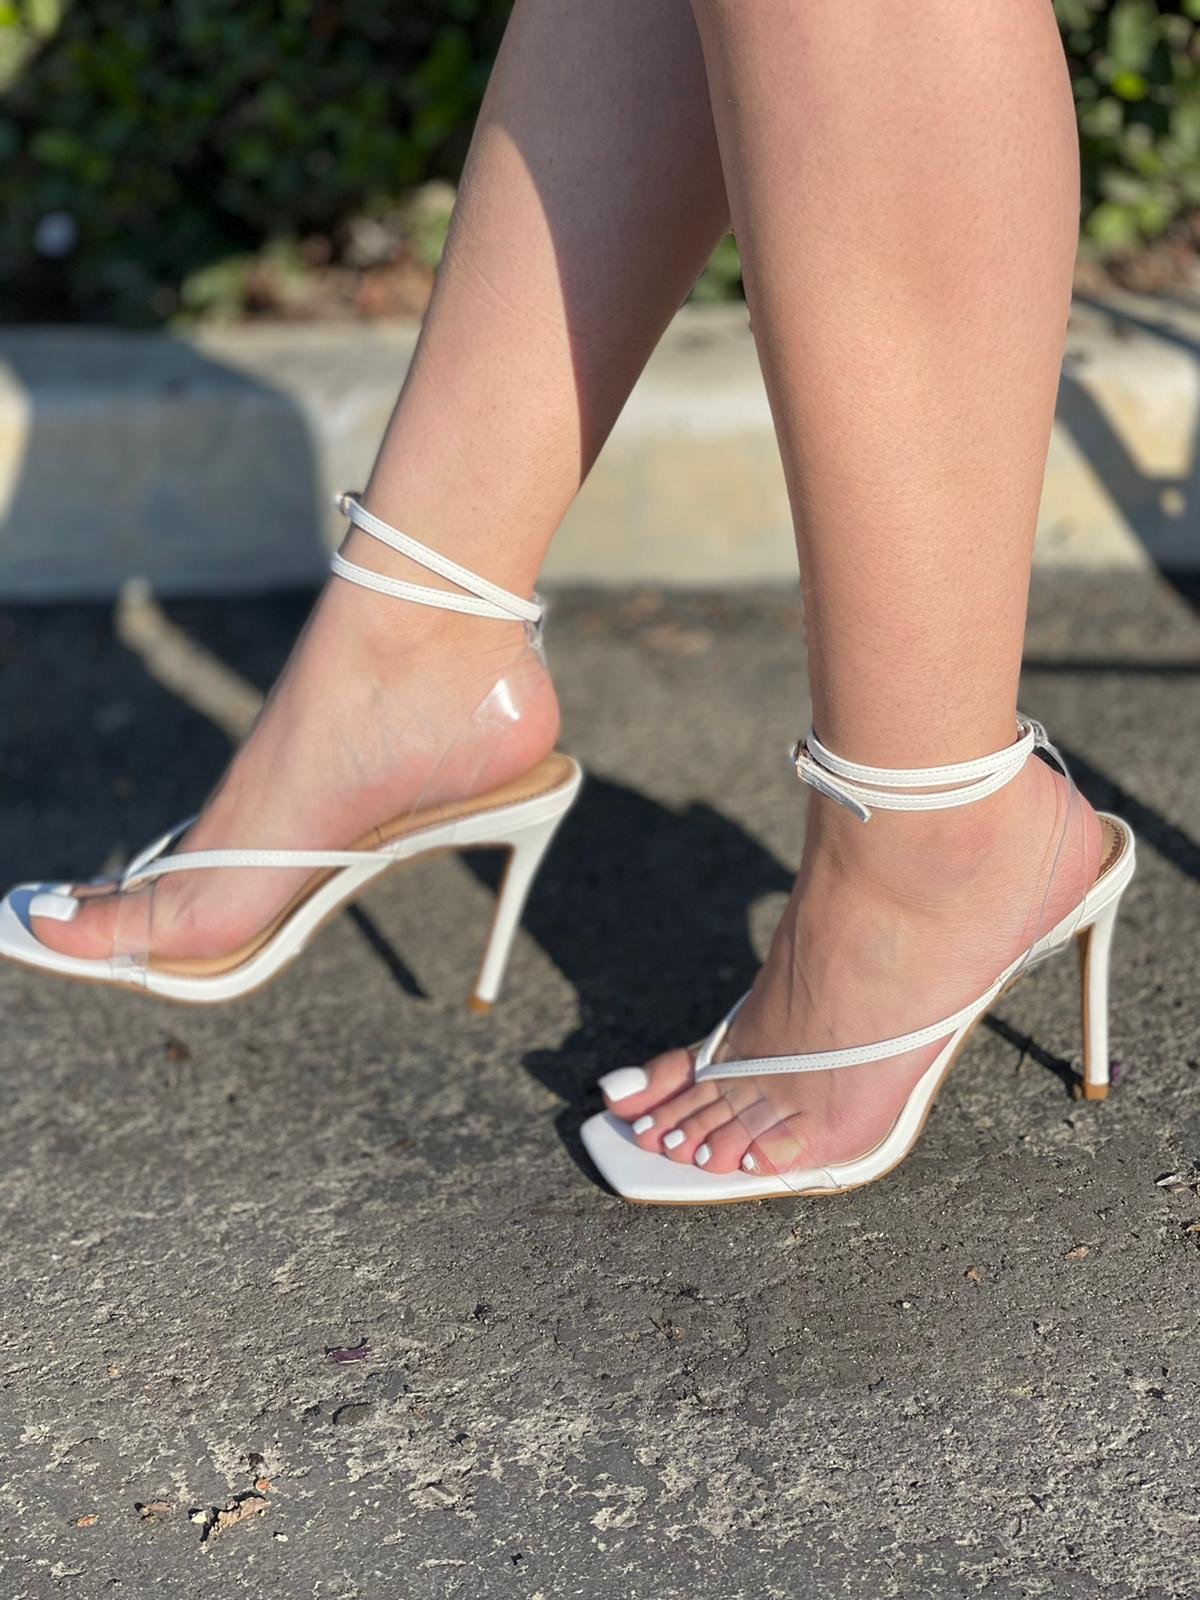 Royal heel * white